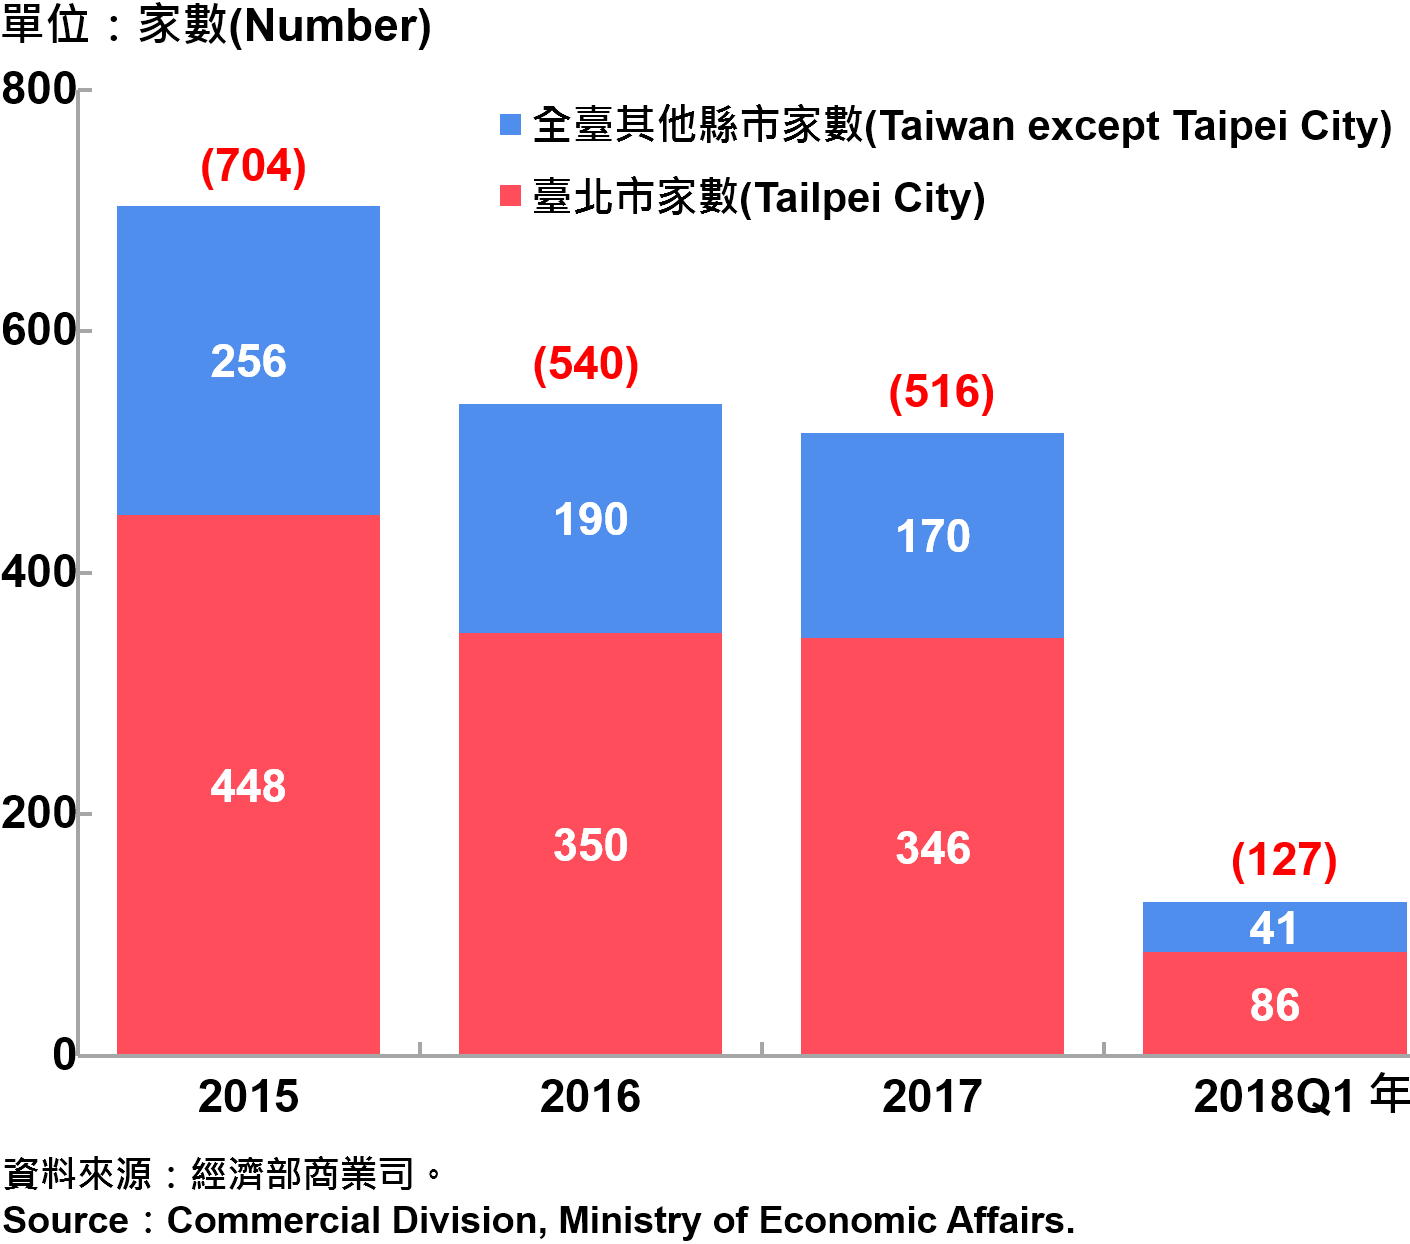 臺北市外商公司新設立家數—2018Q1 Number of Newly Established Foreign Companies in Taipei City—2018Q1